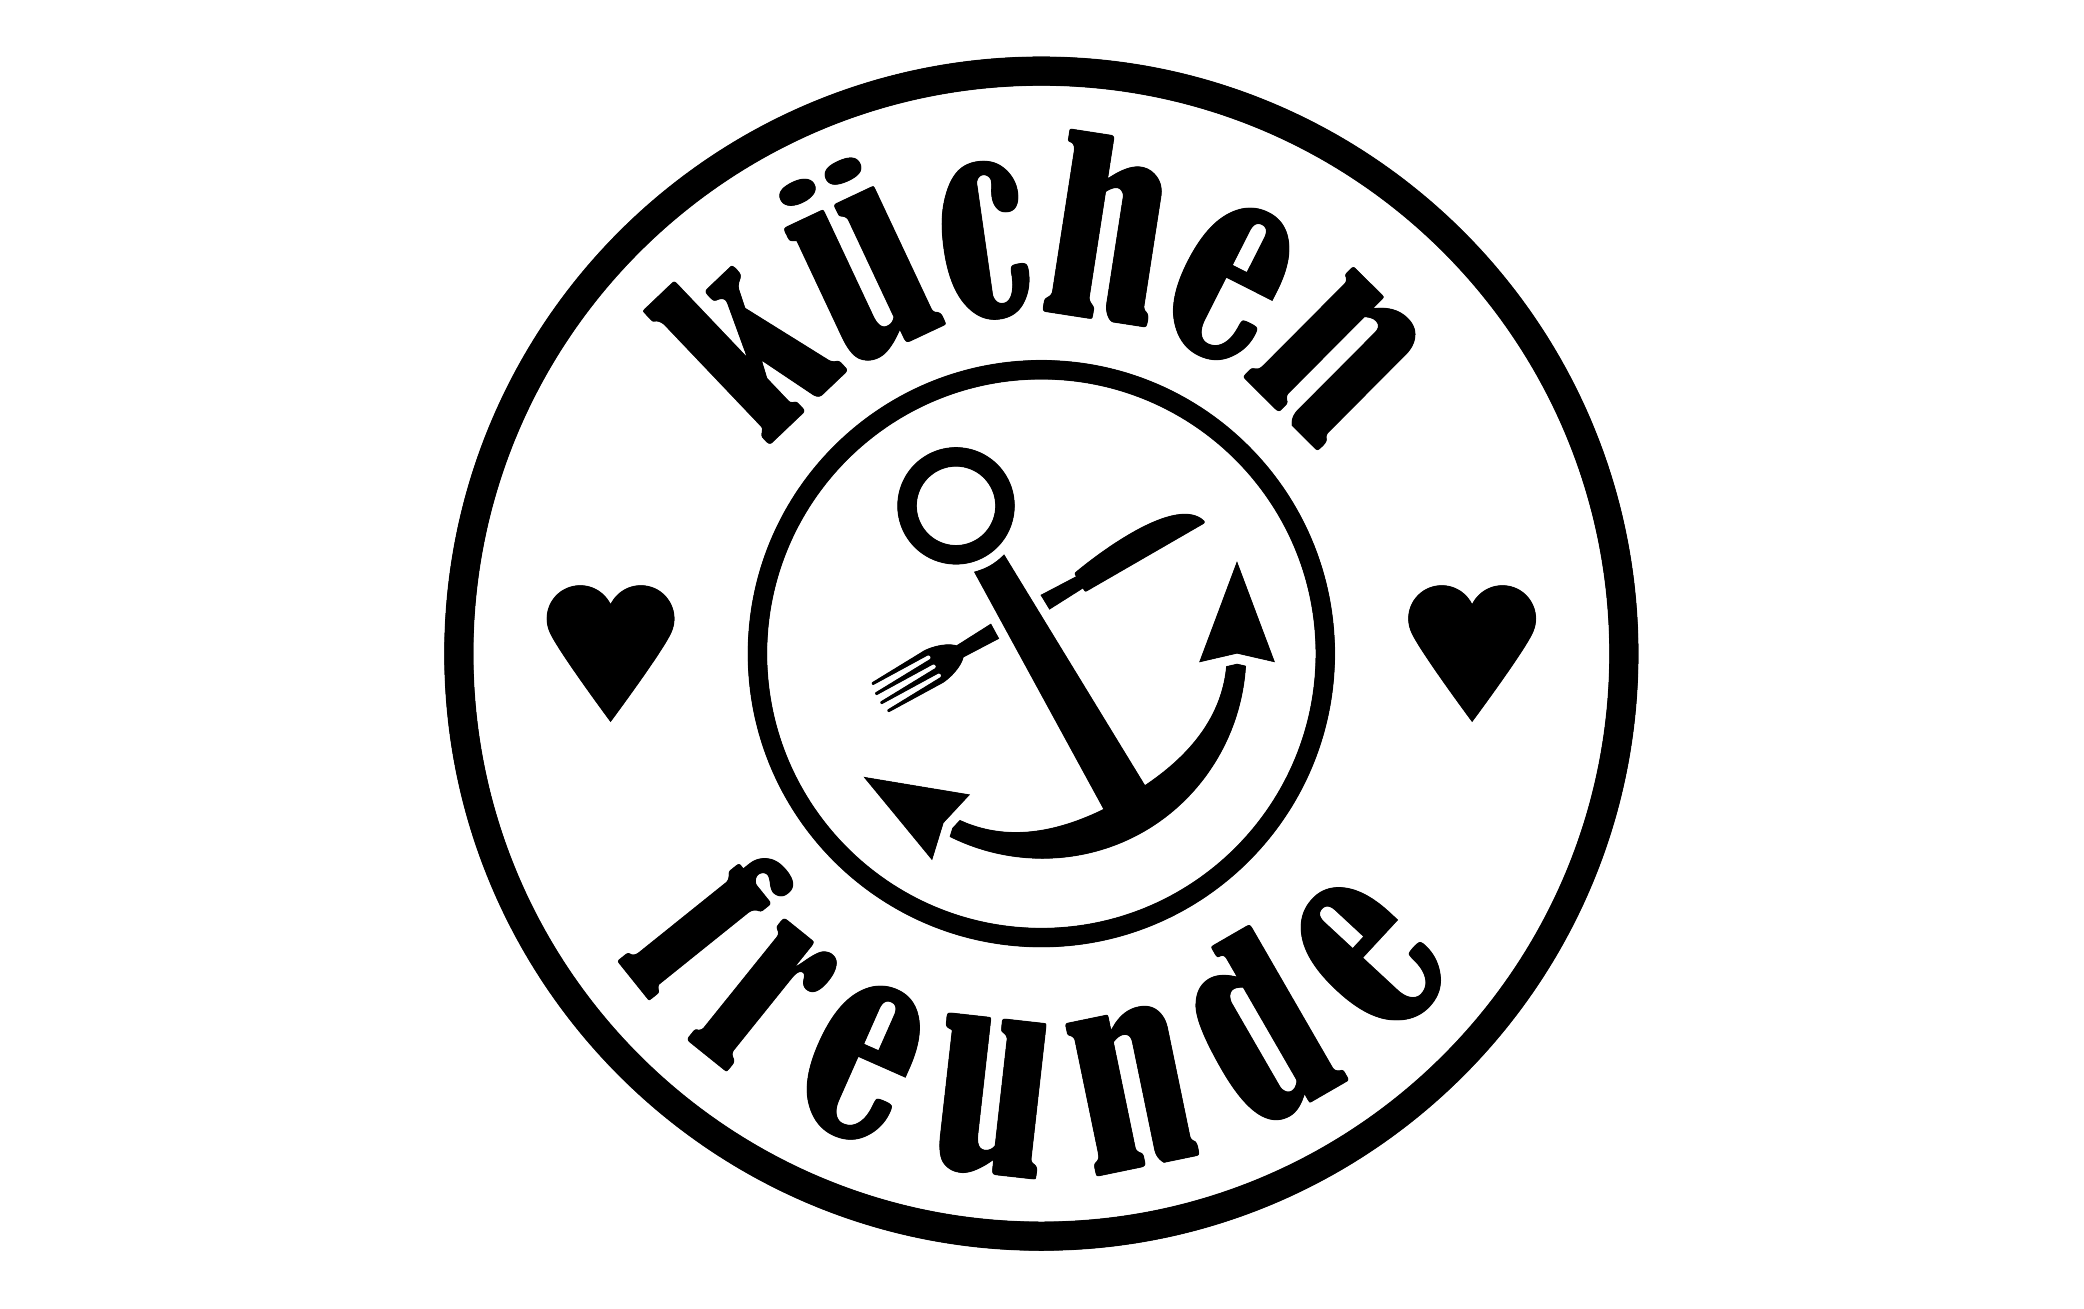 (c) Kuechenfreunde-catering.de